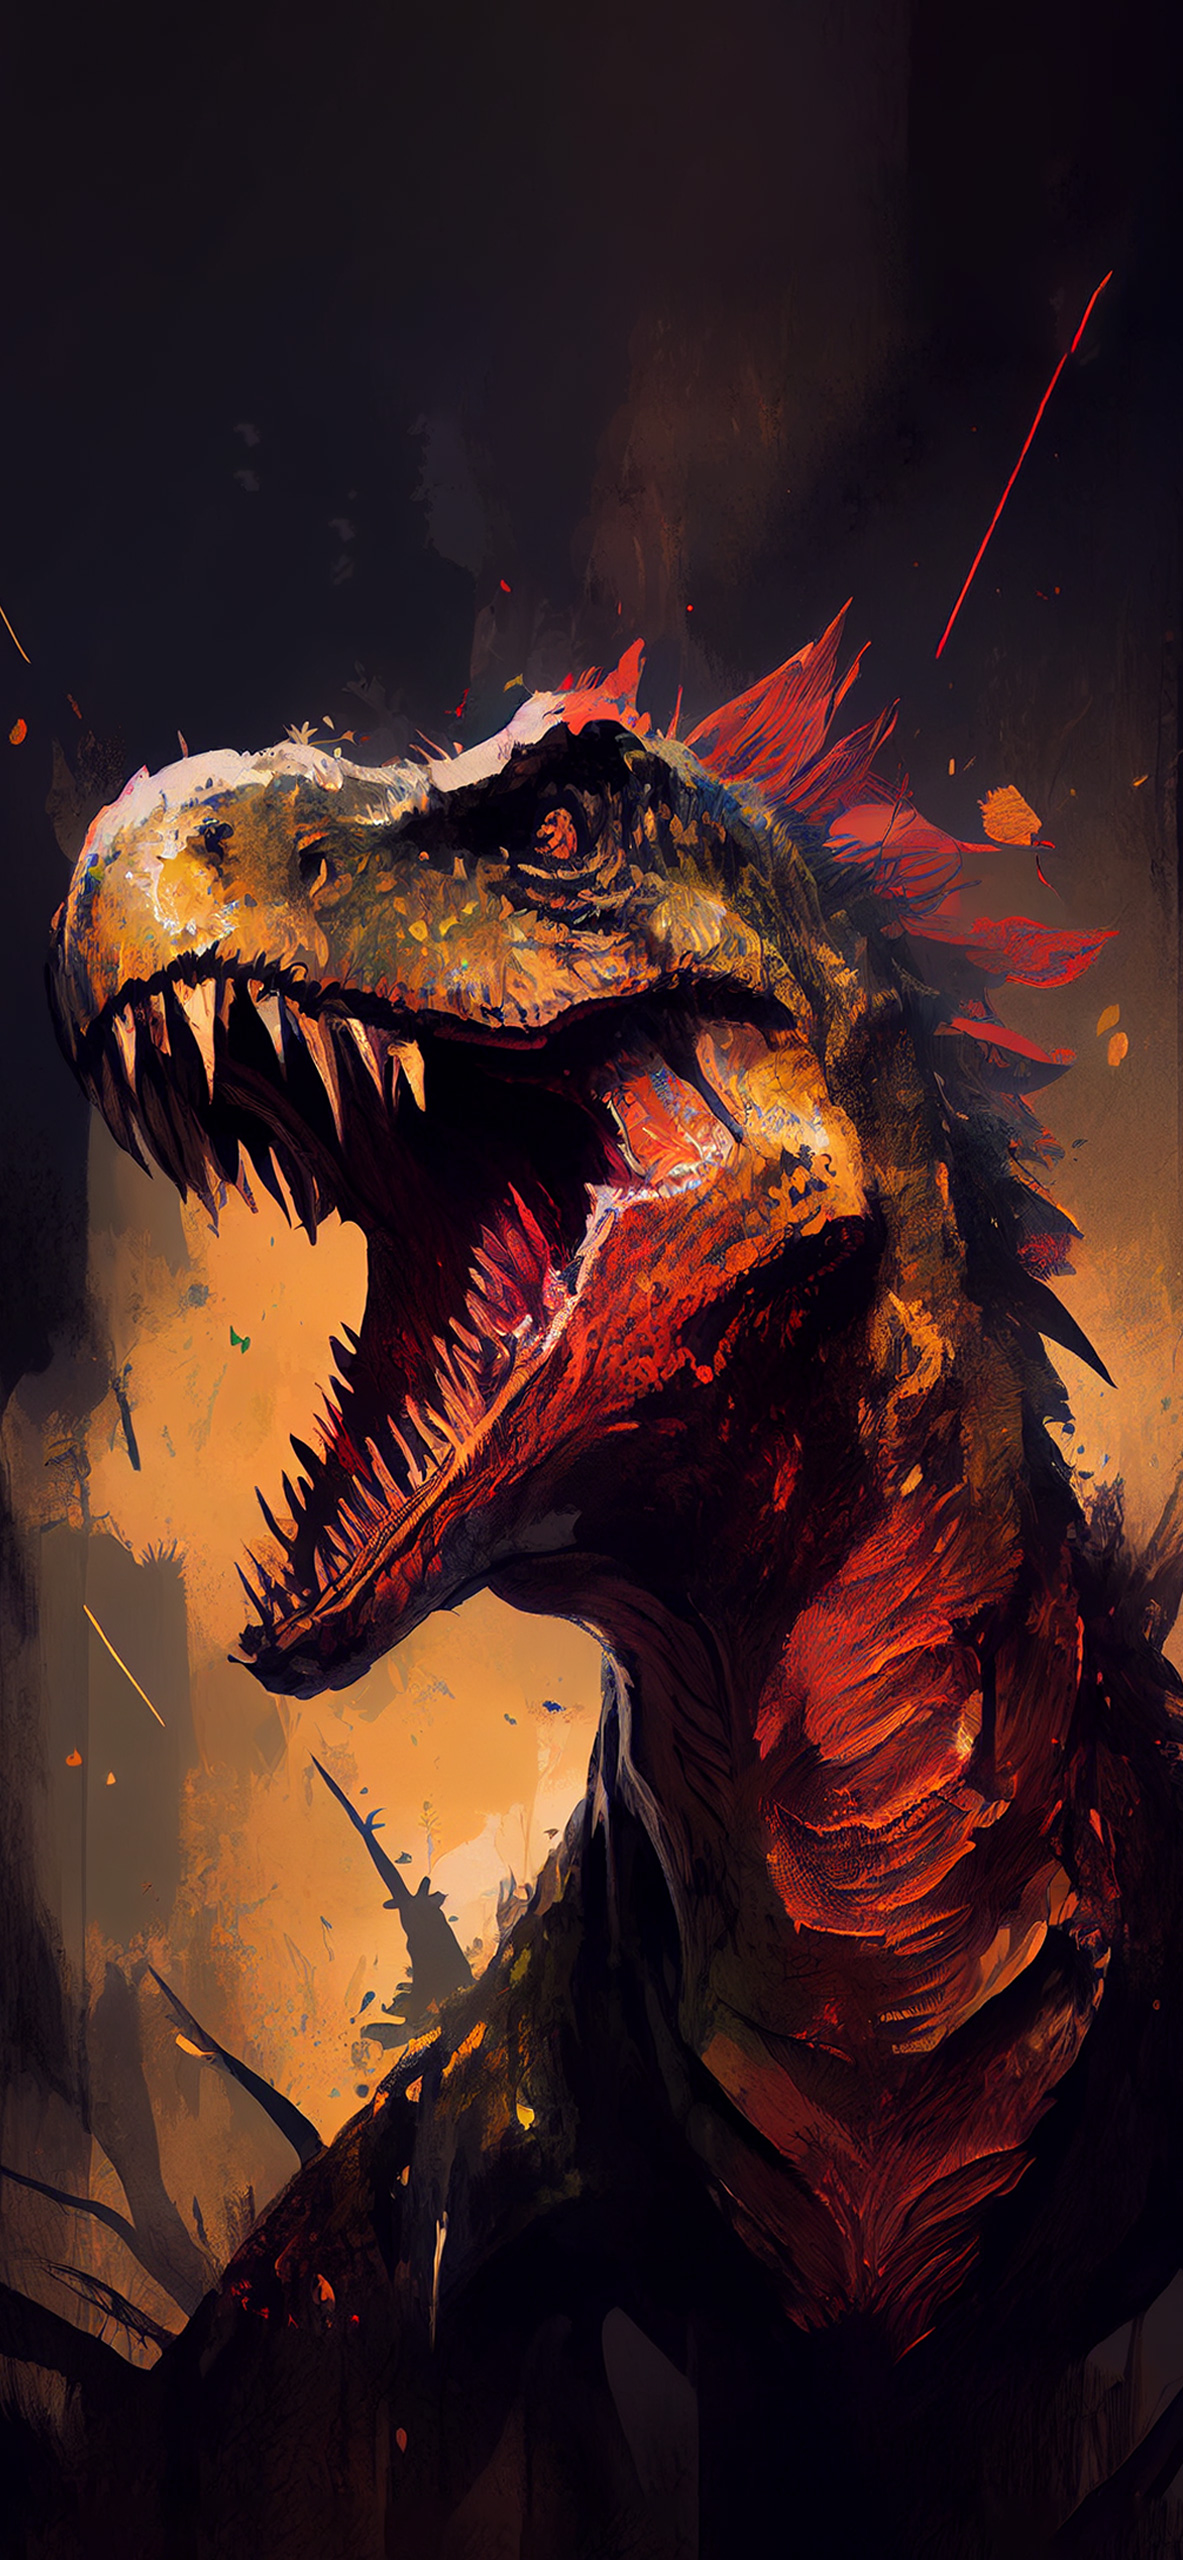 Dinosaur Art Wallpapers - Dinosaur Aesthetic Wallpaper for iPhone